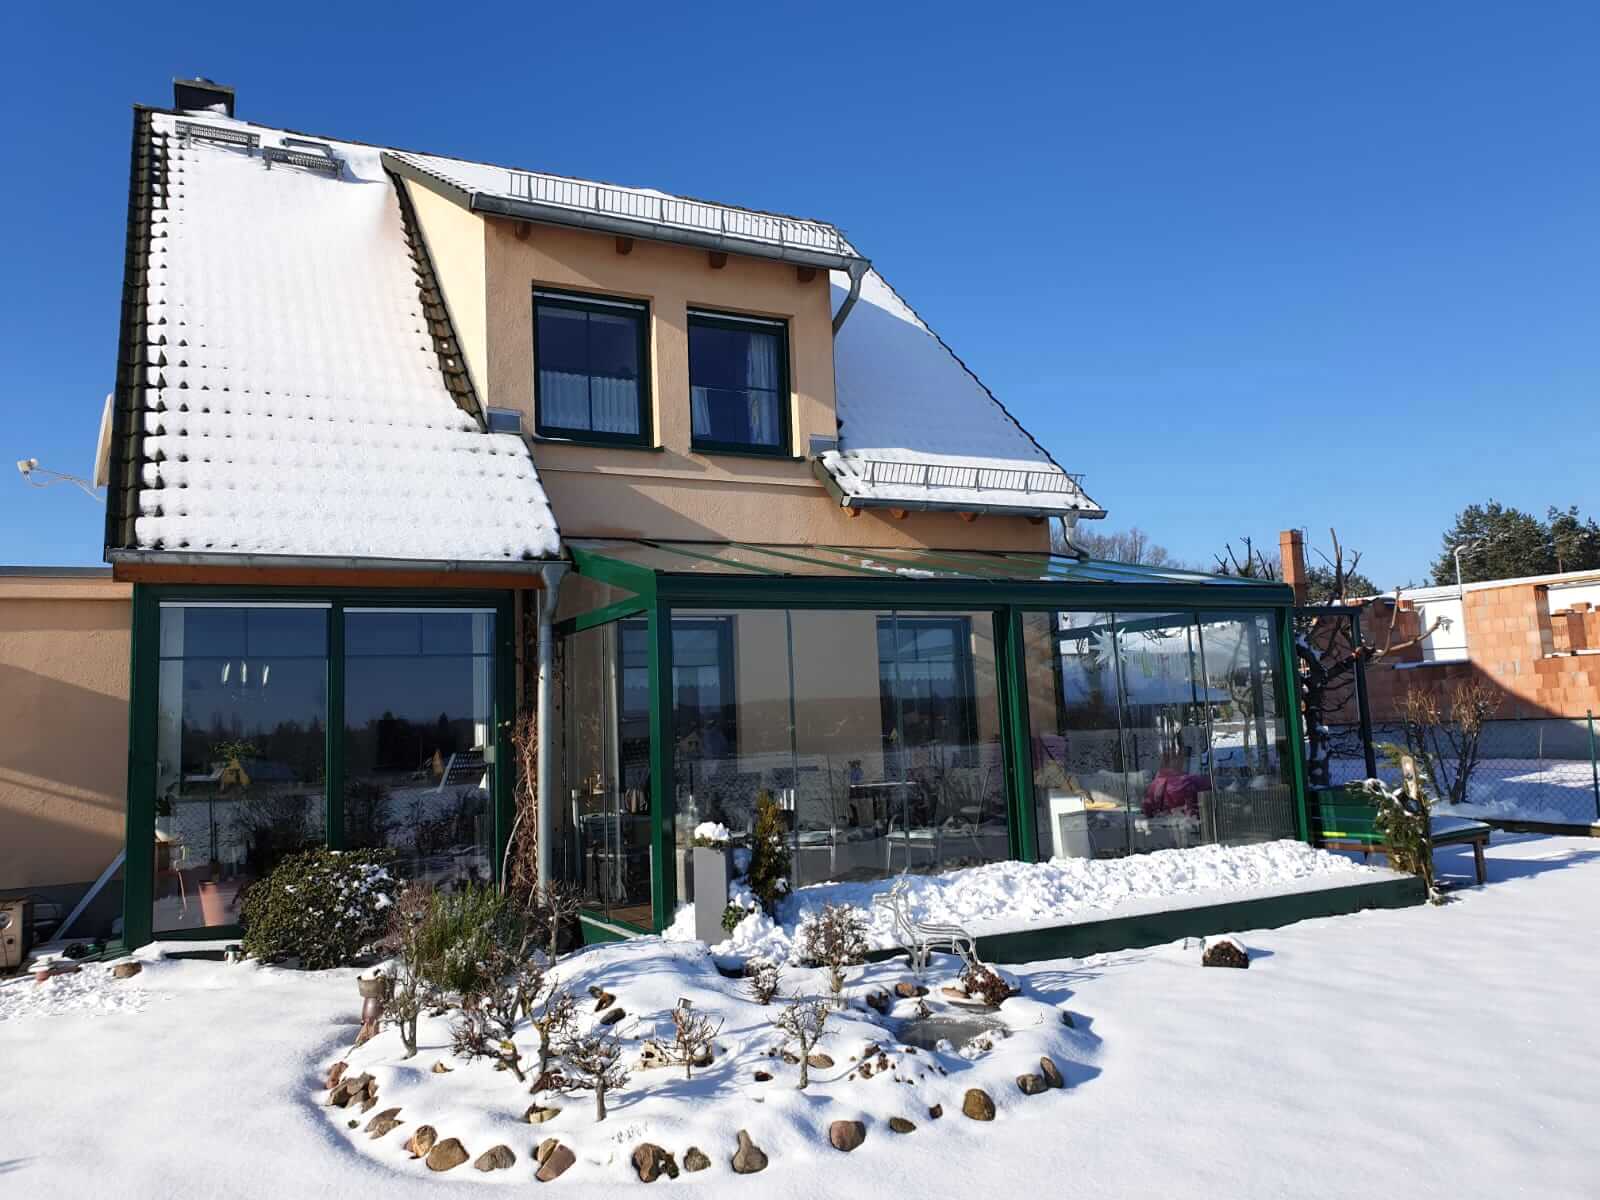 Wintergarten der Firma Ottis Fenster und Türen: Wintergärten sind wärmegedämmte Anbauen mit grossen Glaselementen